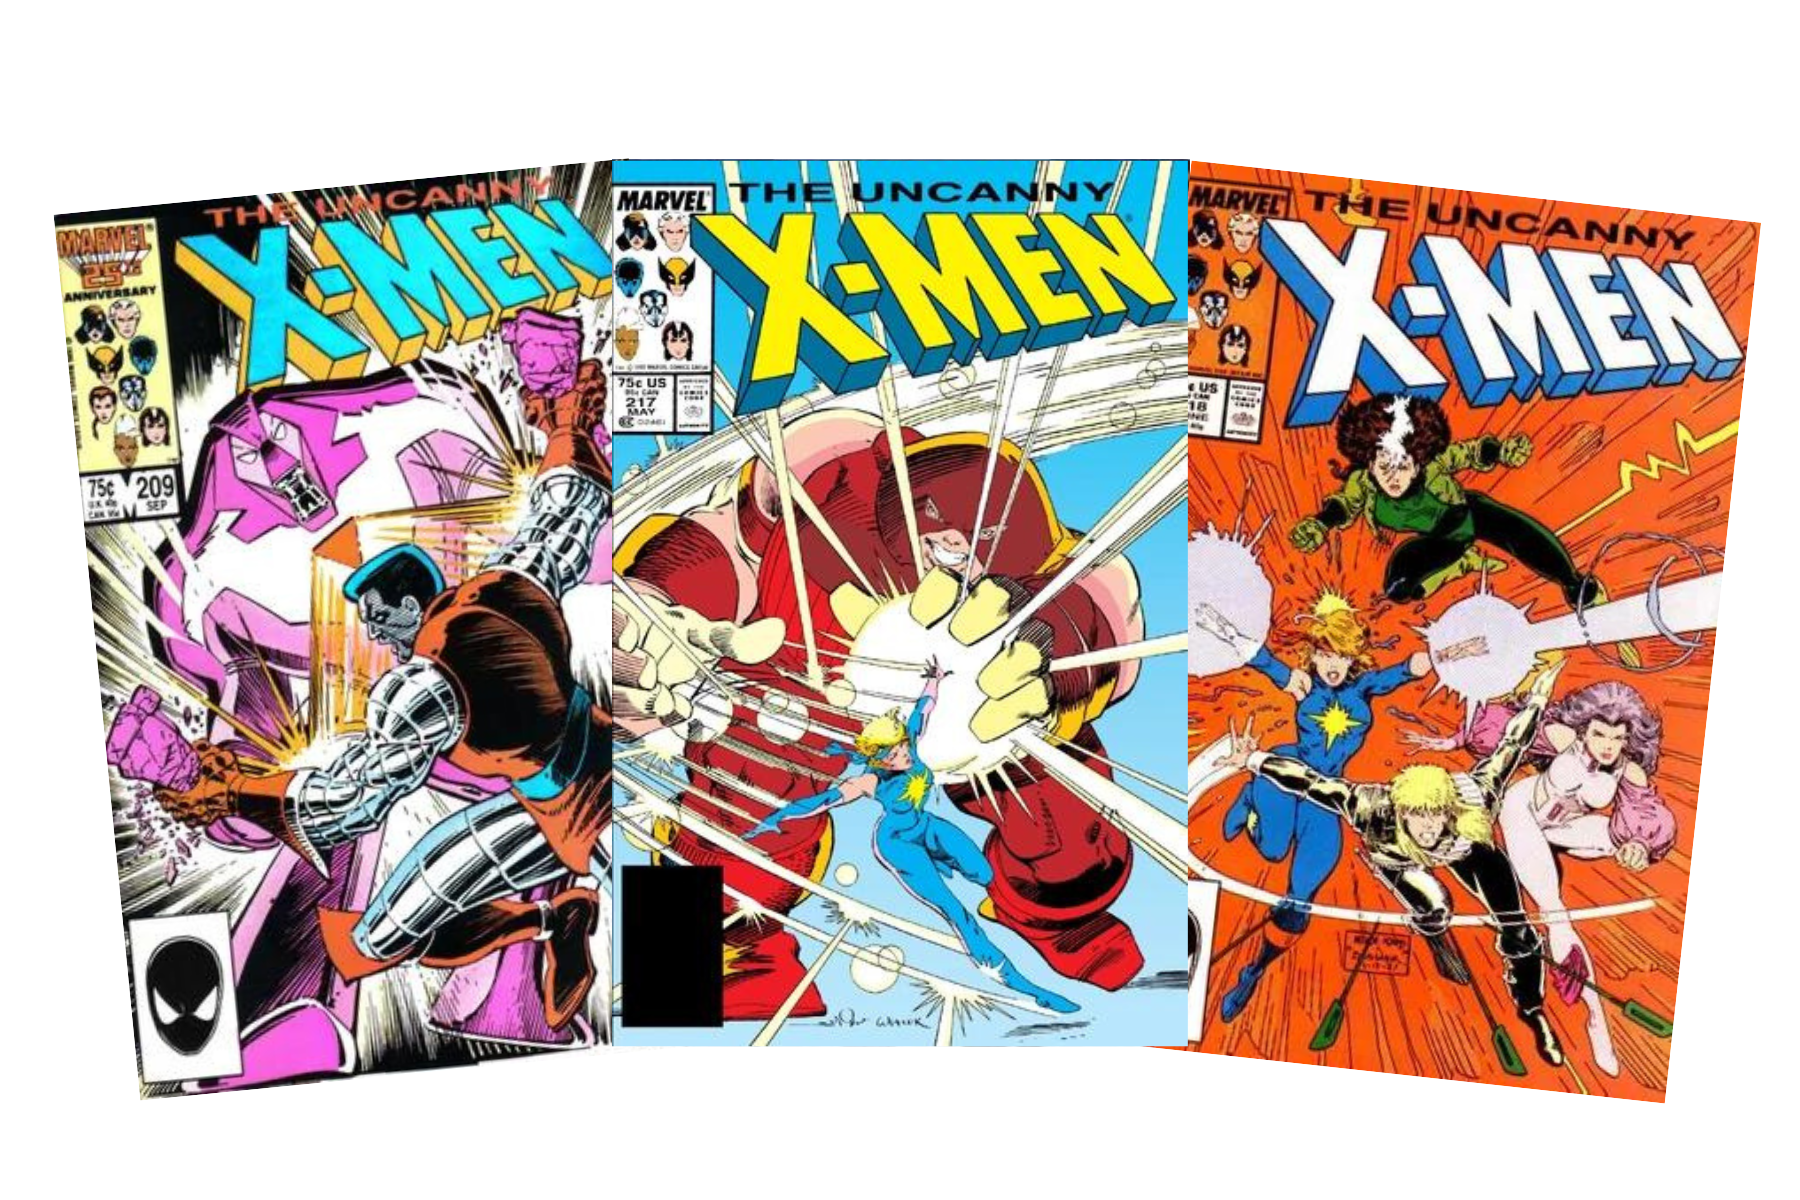 Uncanny X-Men #209, Uncanny X-Men #217, Uncanny X-Men #216